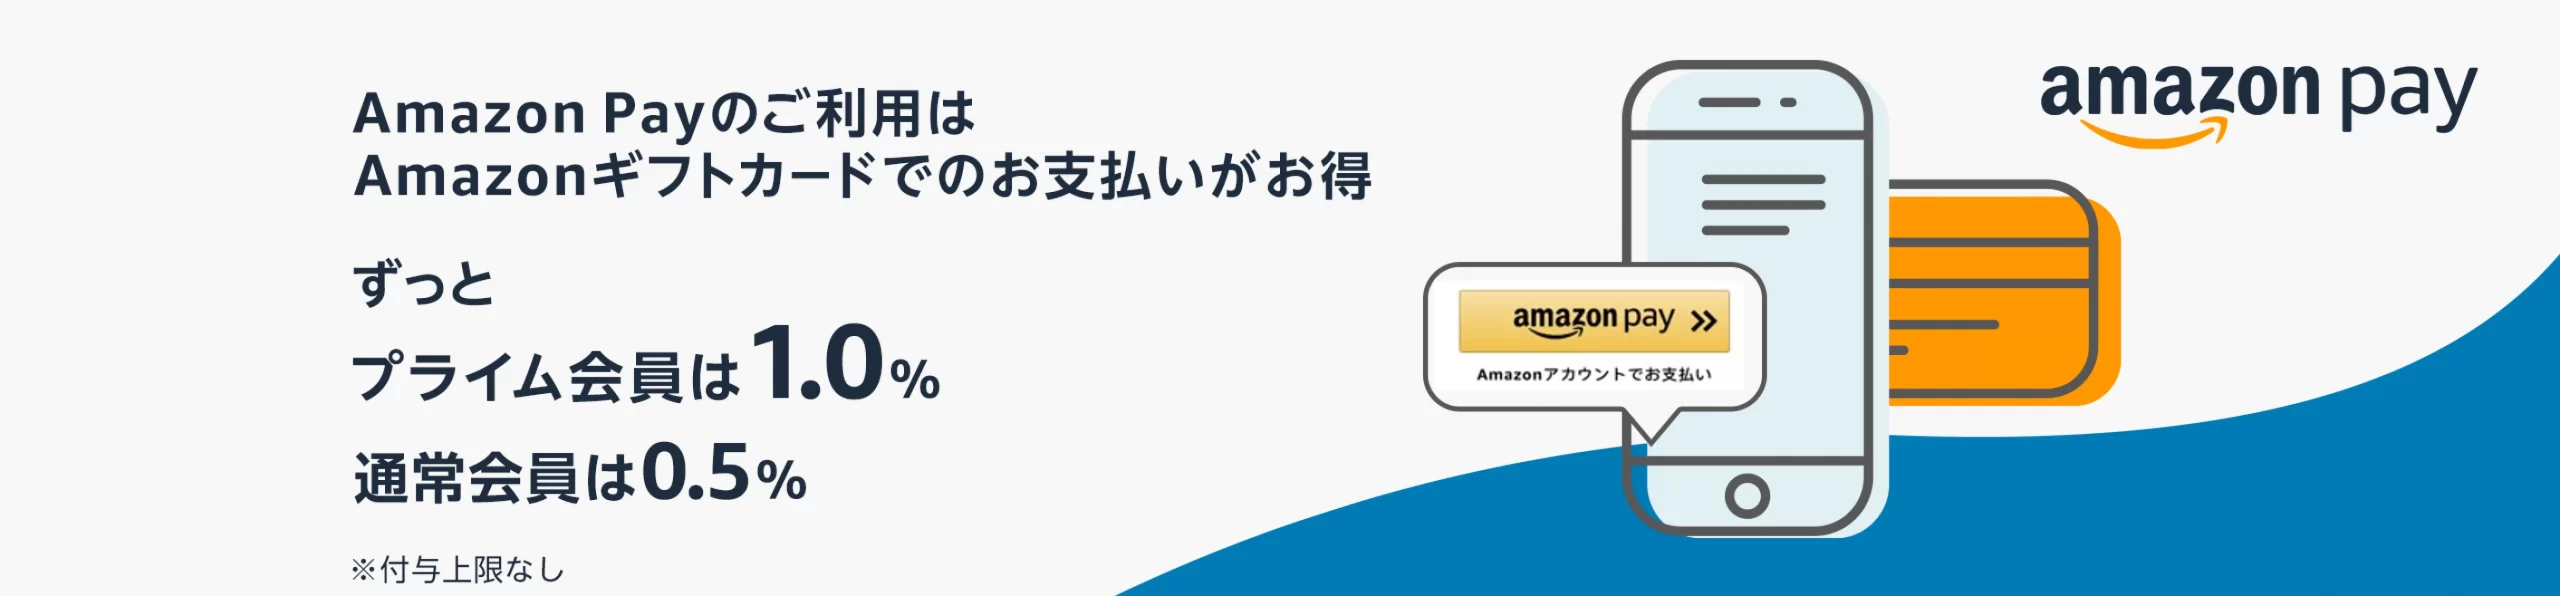 キャンペーン①：AmazonPay決済で最大1.0%還元